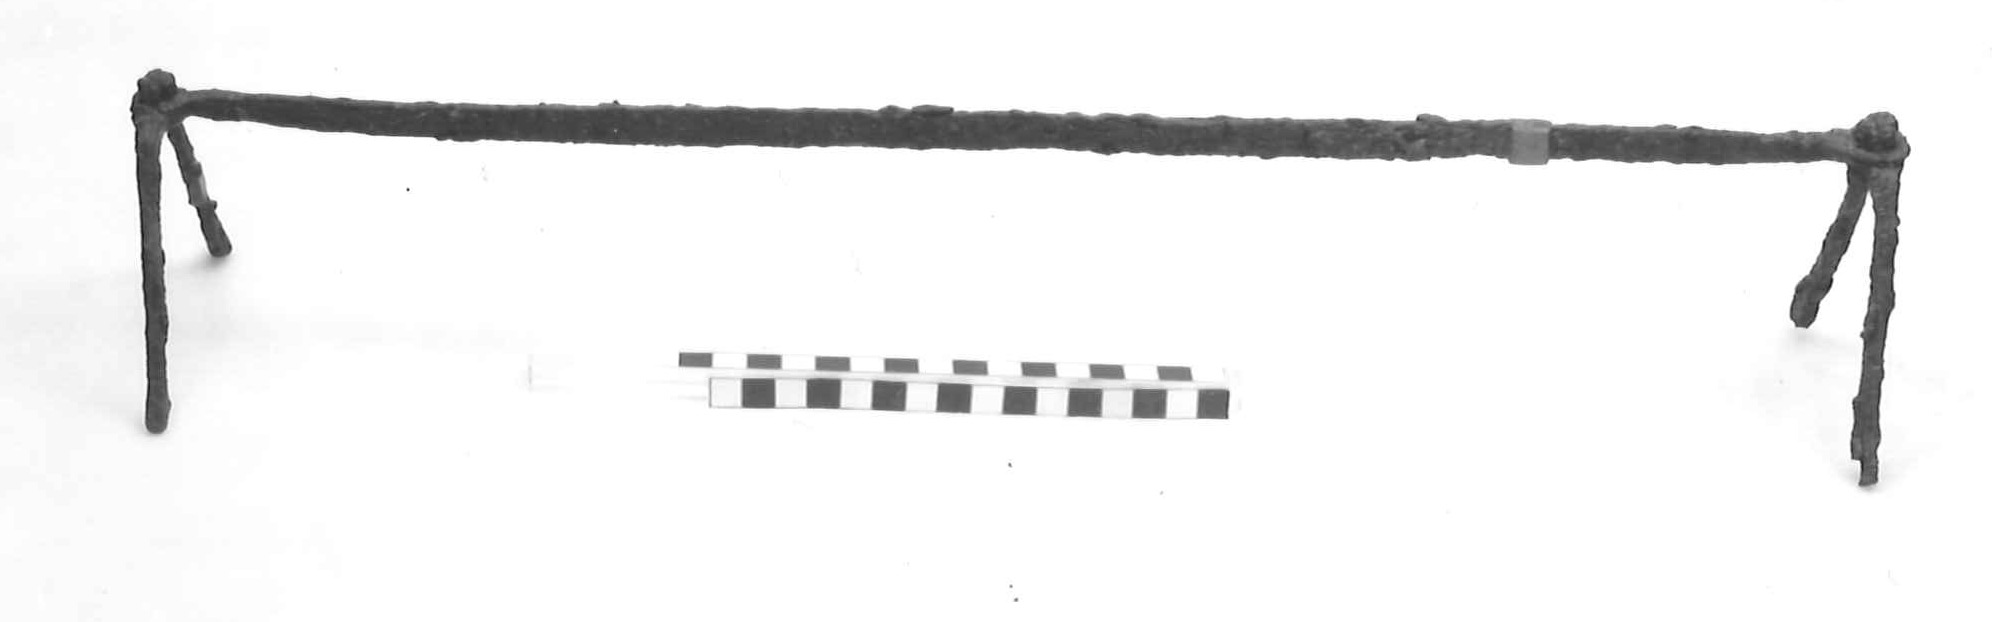 alare - Piceno III (secc. VII-VI a.C)